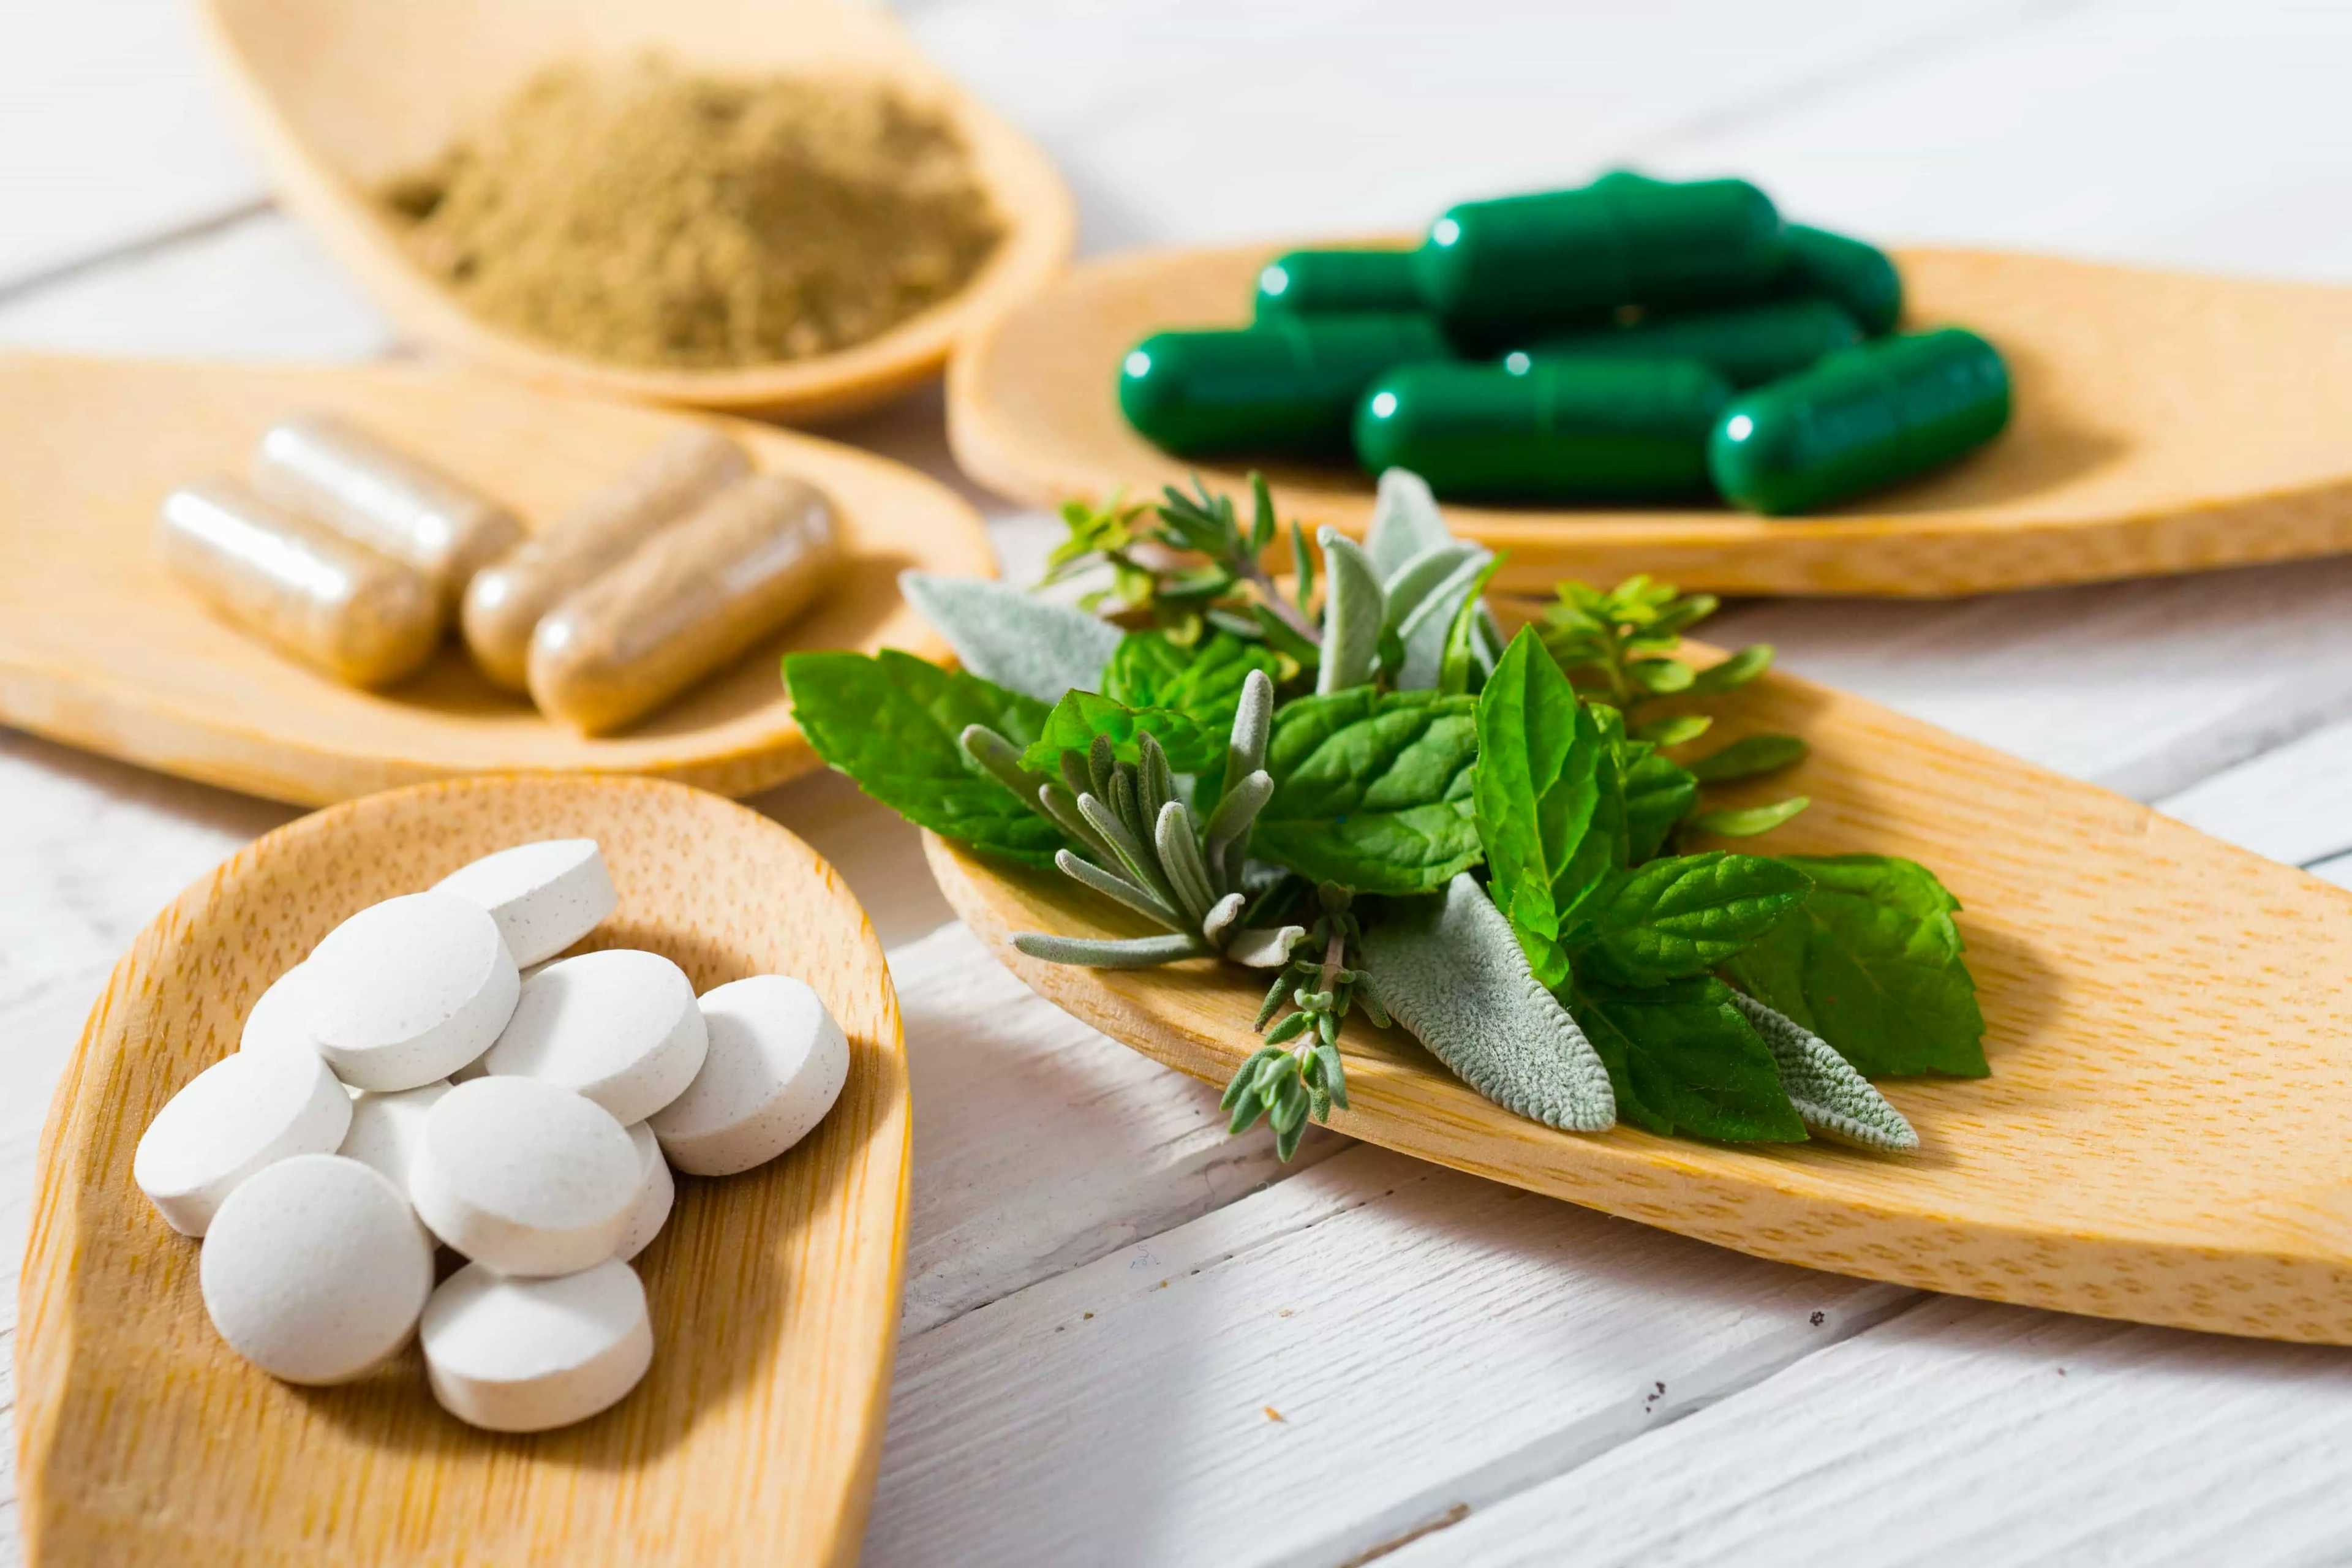 Três tipos de medicamentos naturais sobre um recipiente de madeira, além de um em textura de pó. Também há folhas verdes sobre um outro recipiente.